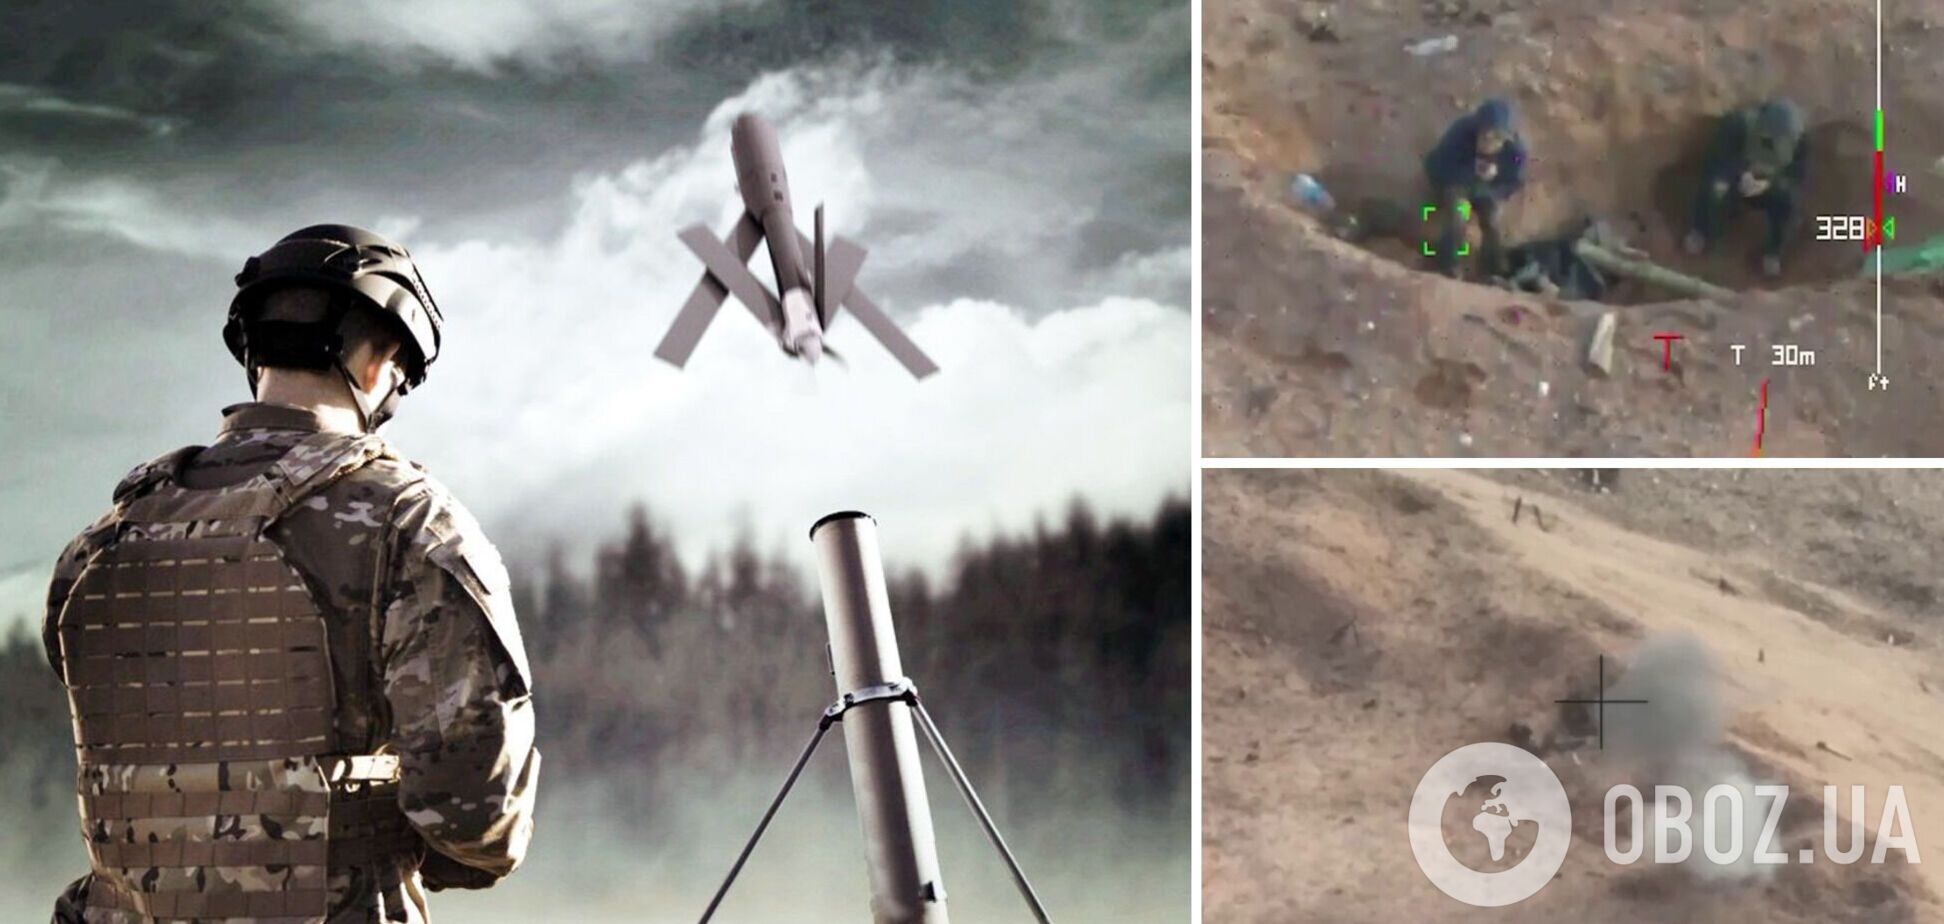 'Охота' была удачной: бойцы ССО уничтожили вражеский расчет ПТРК дроном-камикадзе Switchblade 300. Видео